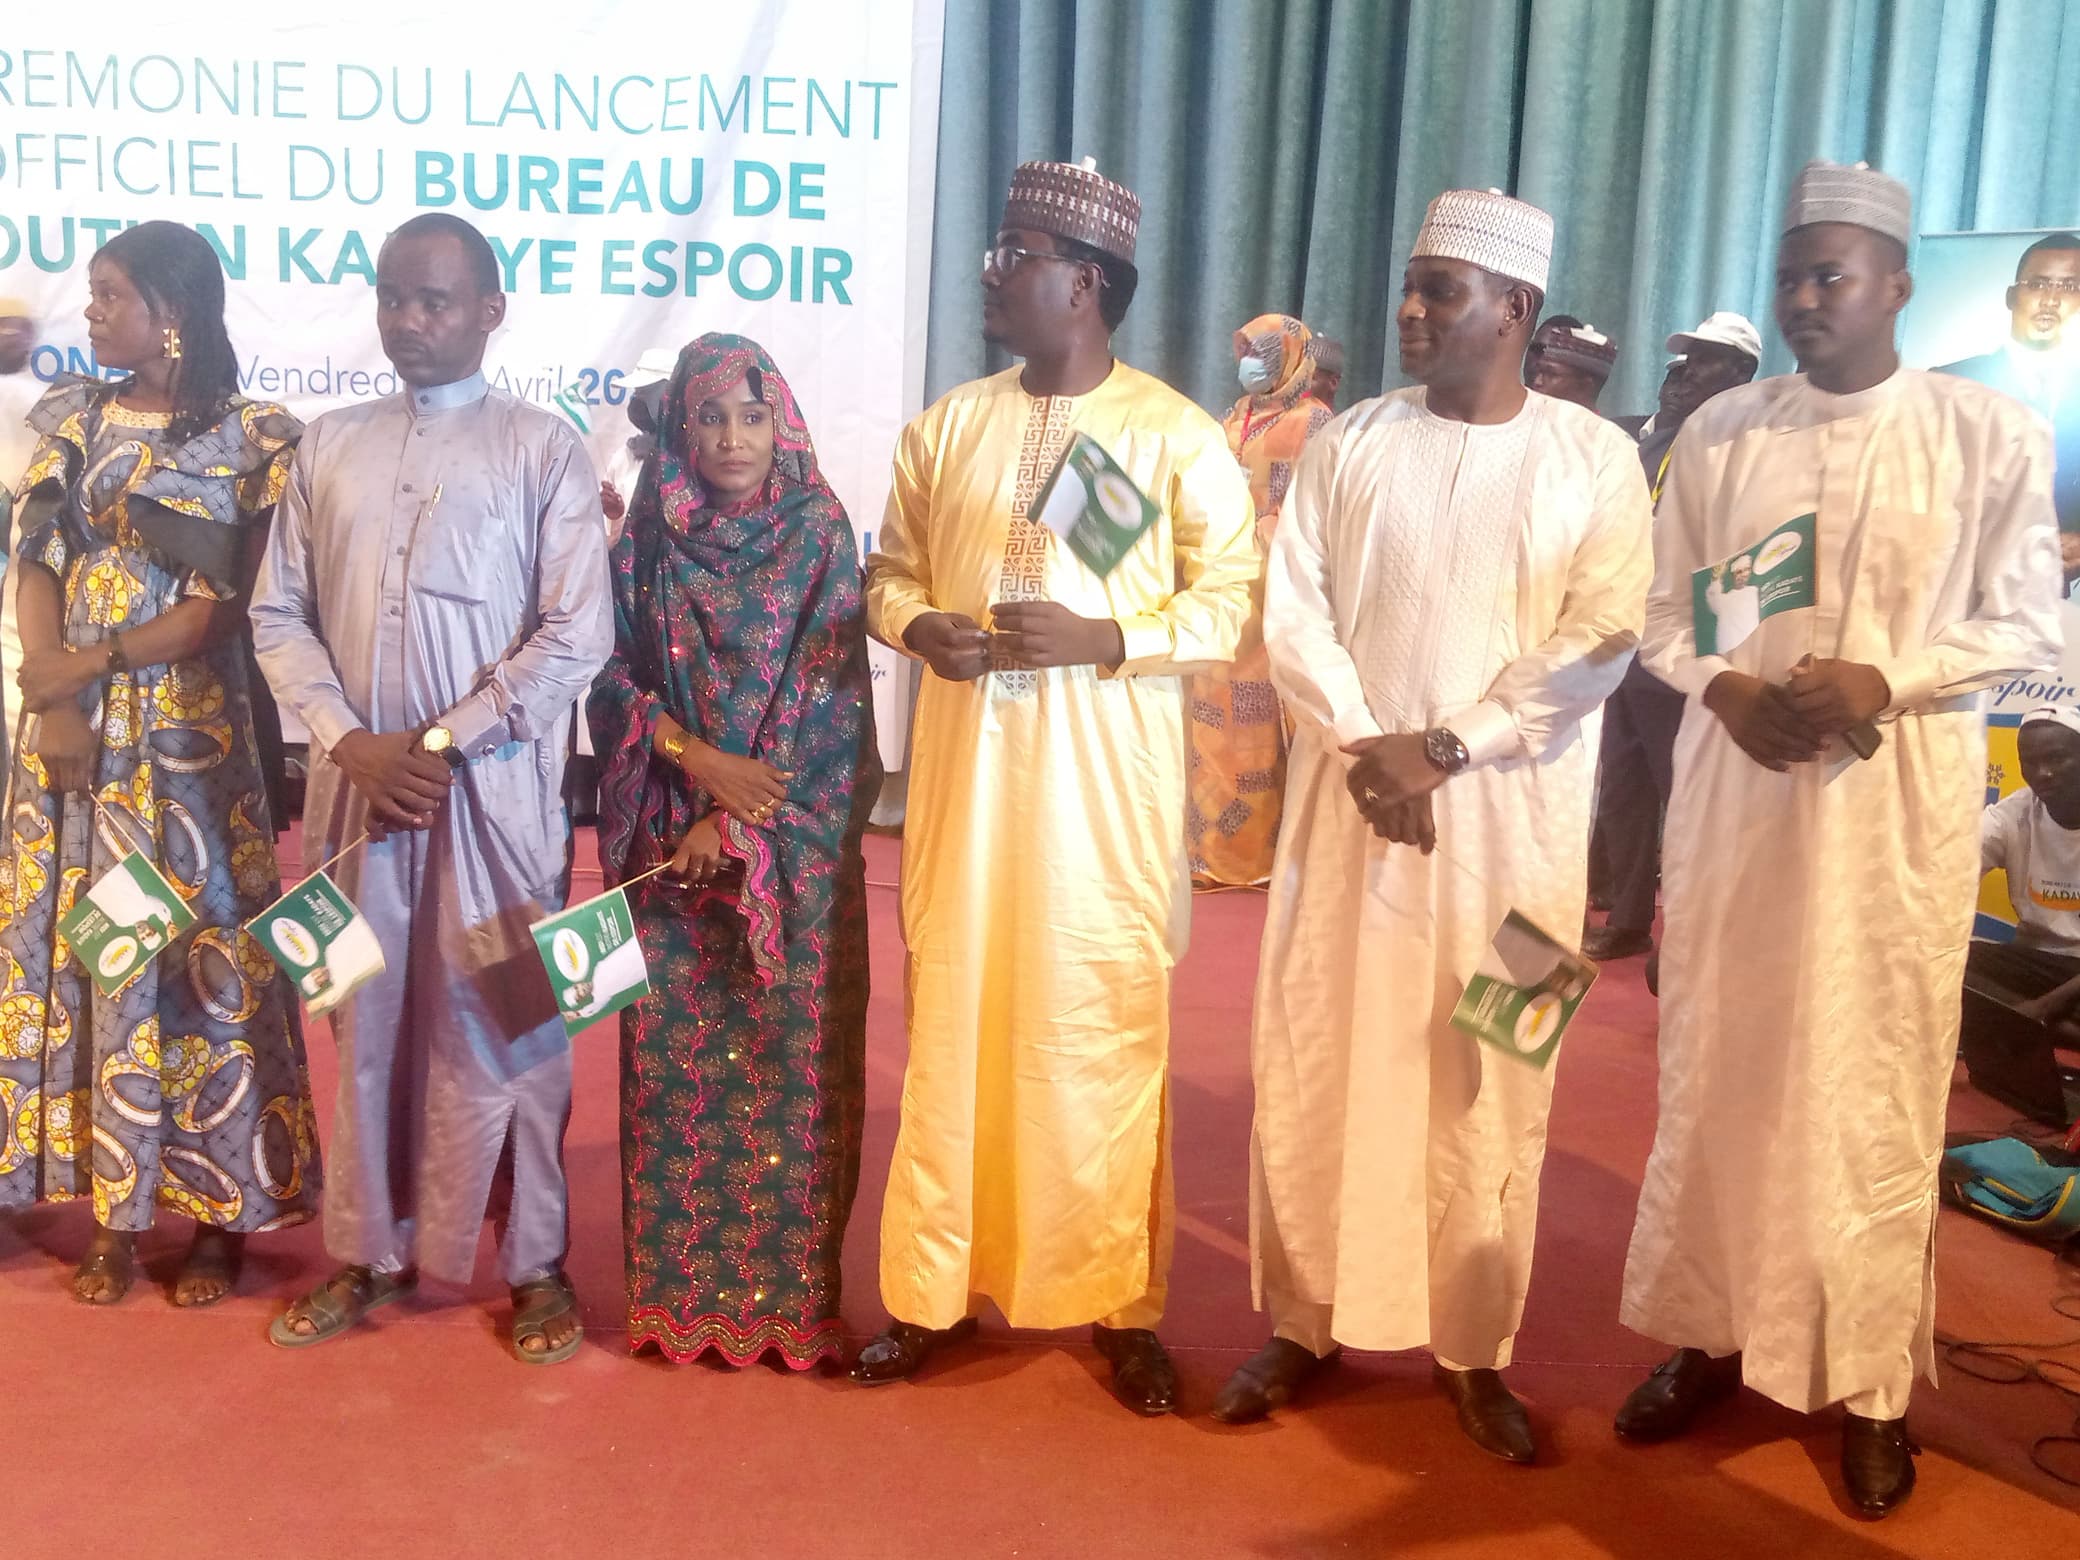 Tchad : le bureau de soutien 'Kadaye Espoir' se mobilise pour la victoire de Mahamat Idriss Déby